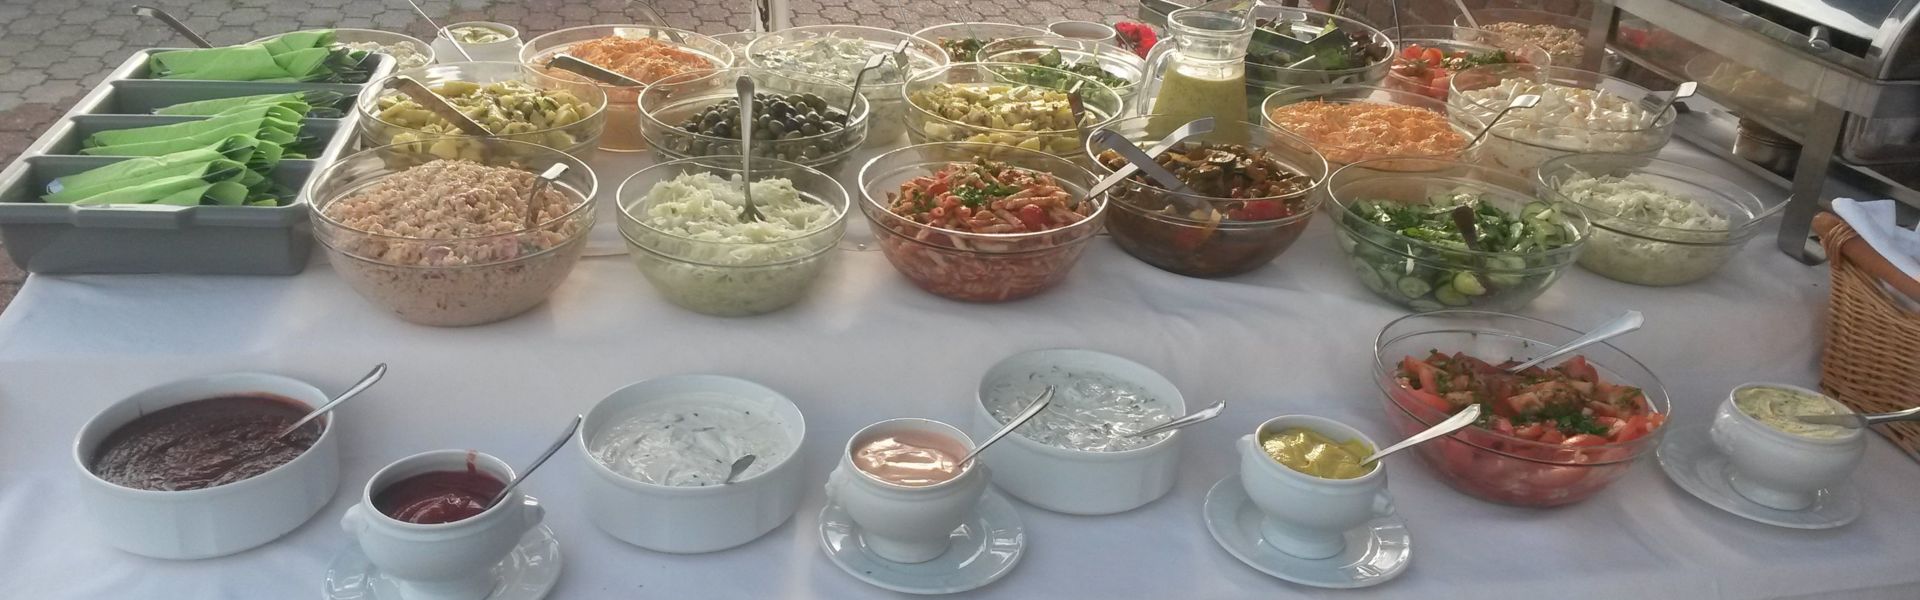 Buffet mit verschiedenen Salaten